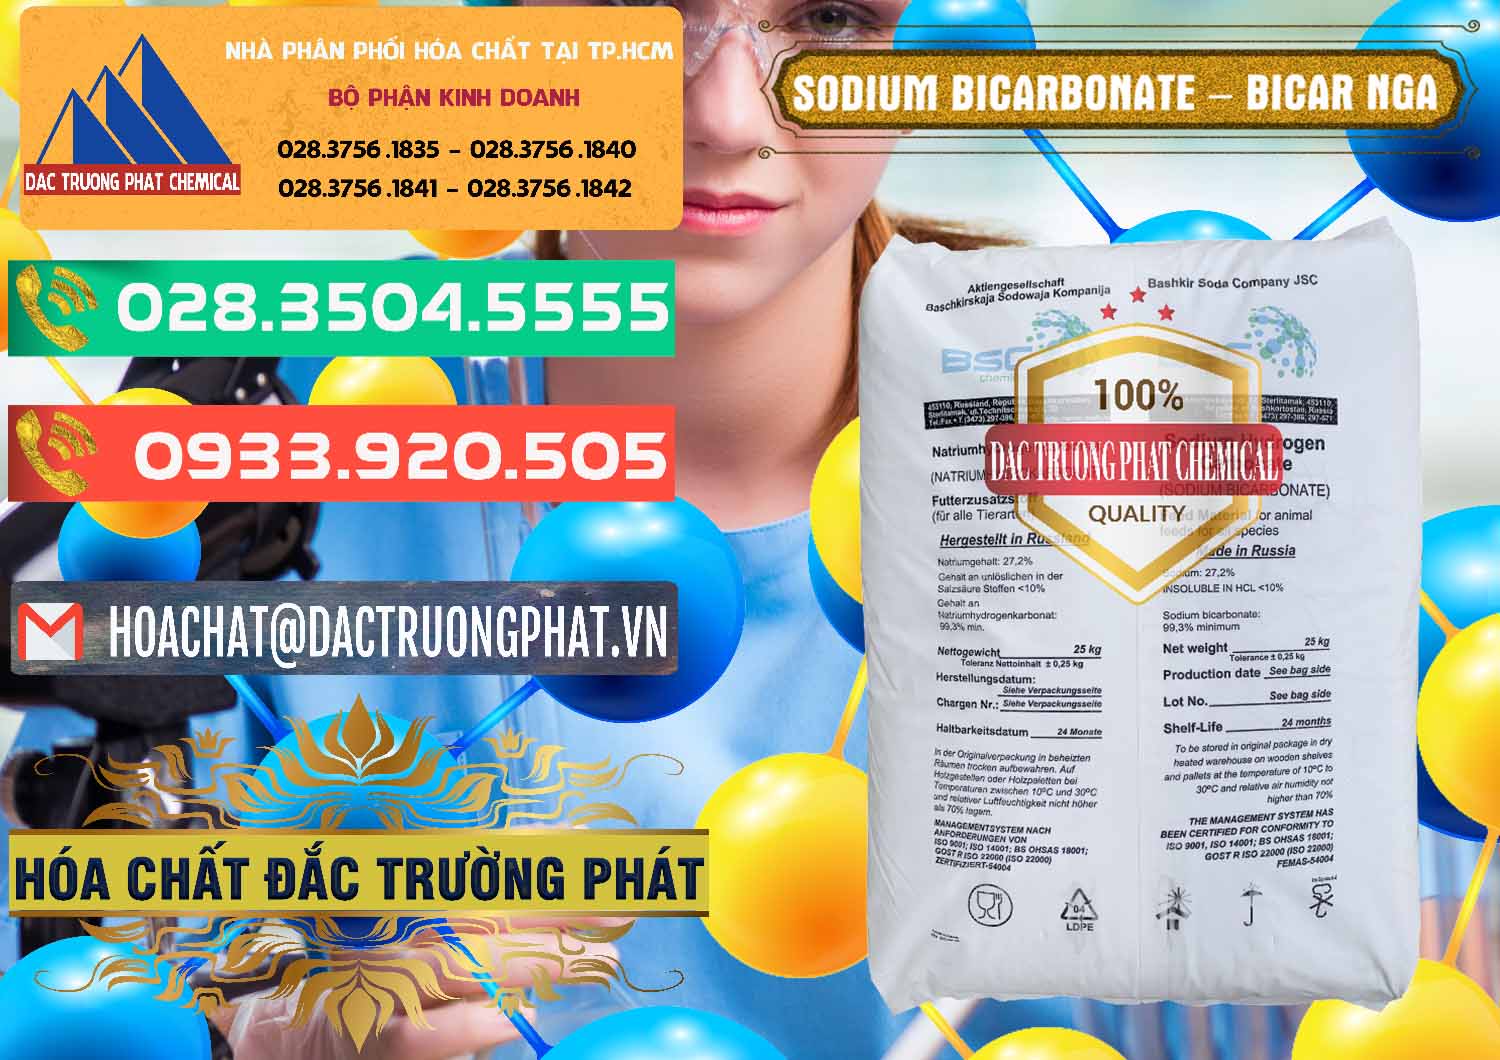 Cty chuyên bán và cung cấp Sodium Bicarbonate – Bicar NaHCO3 Nga Russia - 0425 - Nơi chuyên phân phối và bán hóa chất tại TP.HCM - congtyhoachat.com.vn